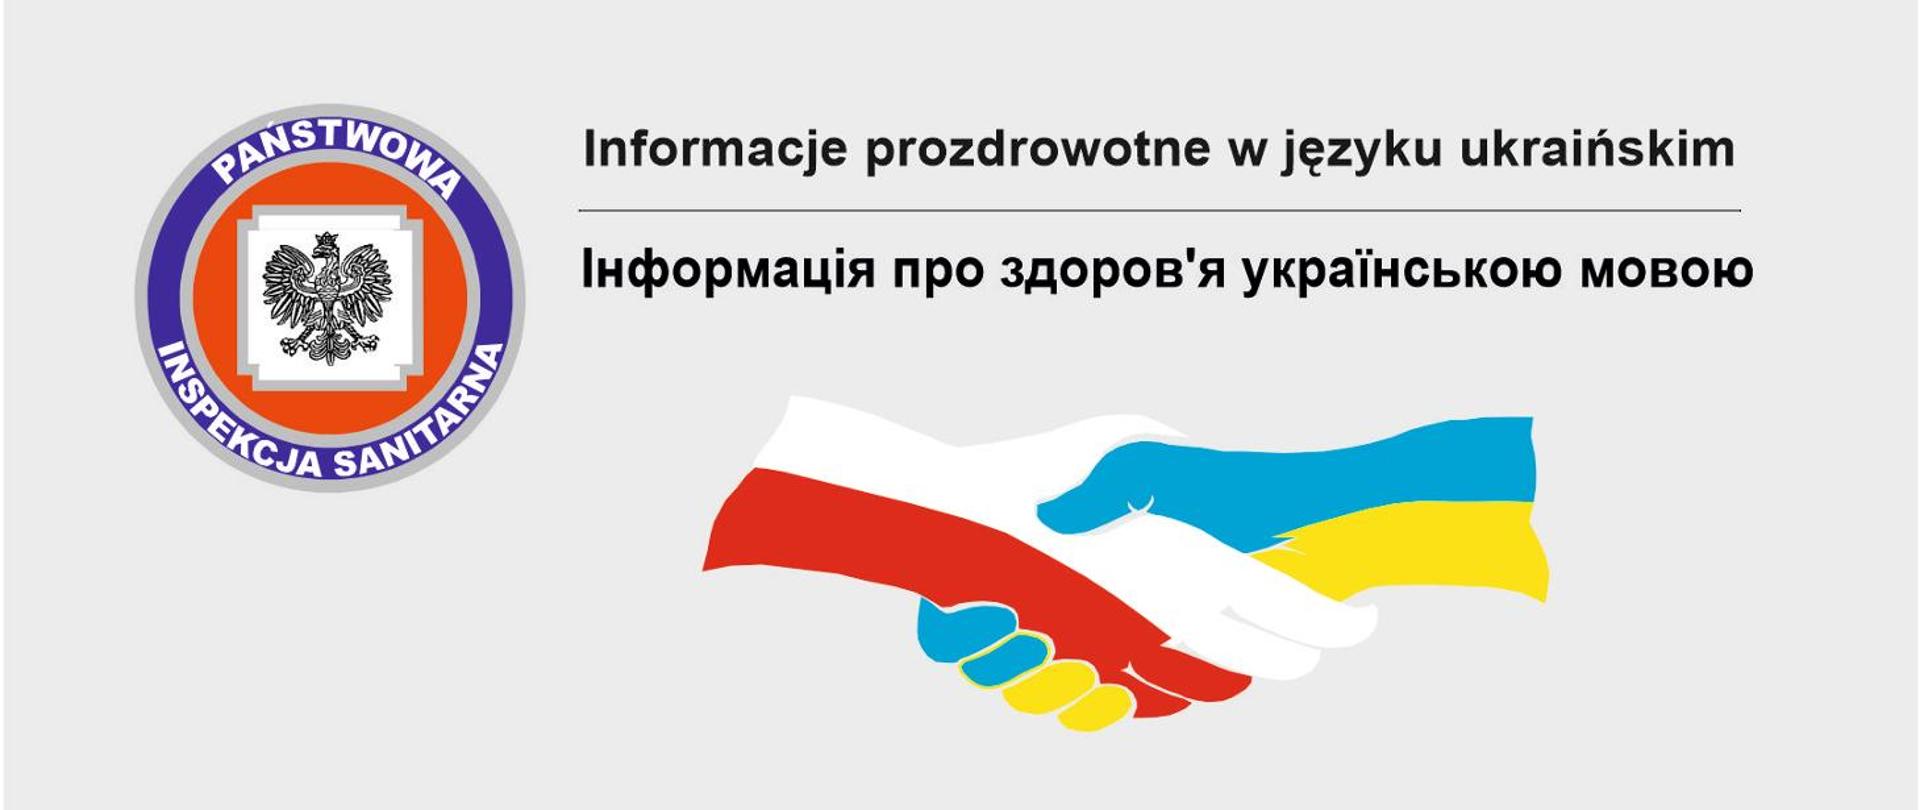 Baner informacje prozdrowotne w języku ukraińskim